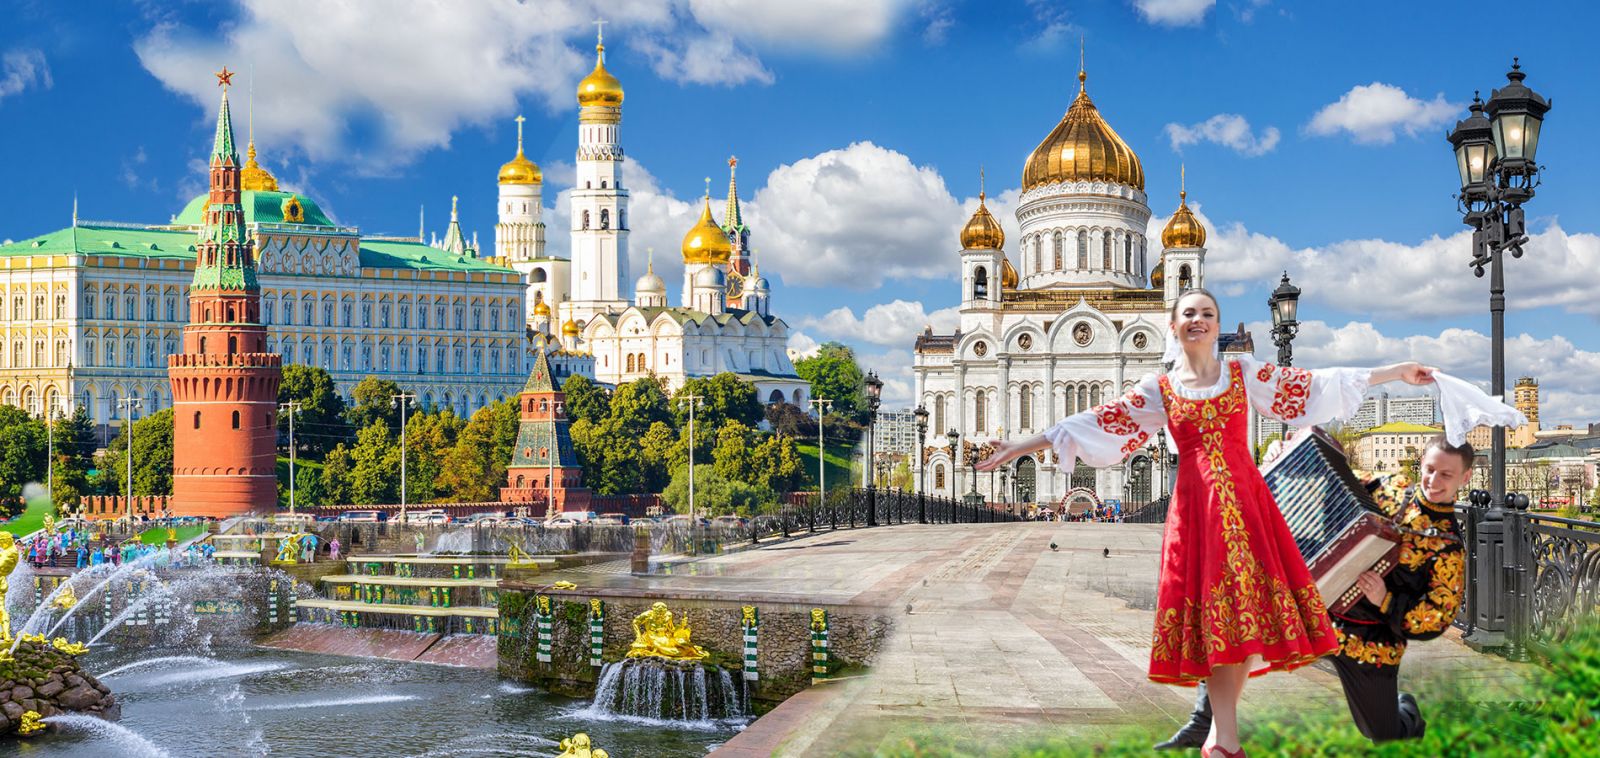 Kết quả hình ảnh cho hình ảnh đẹp Nhà thờ Chúa cứu thế Nga